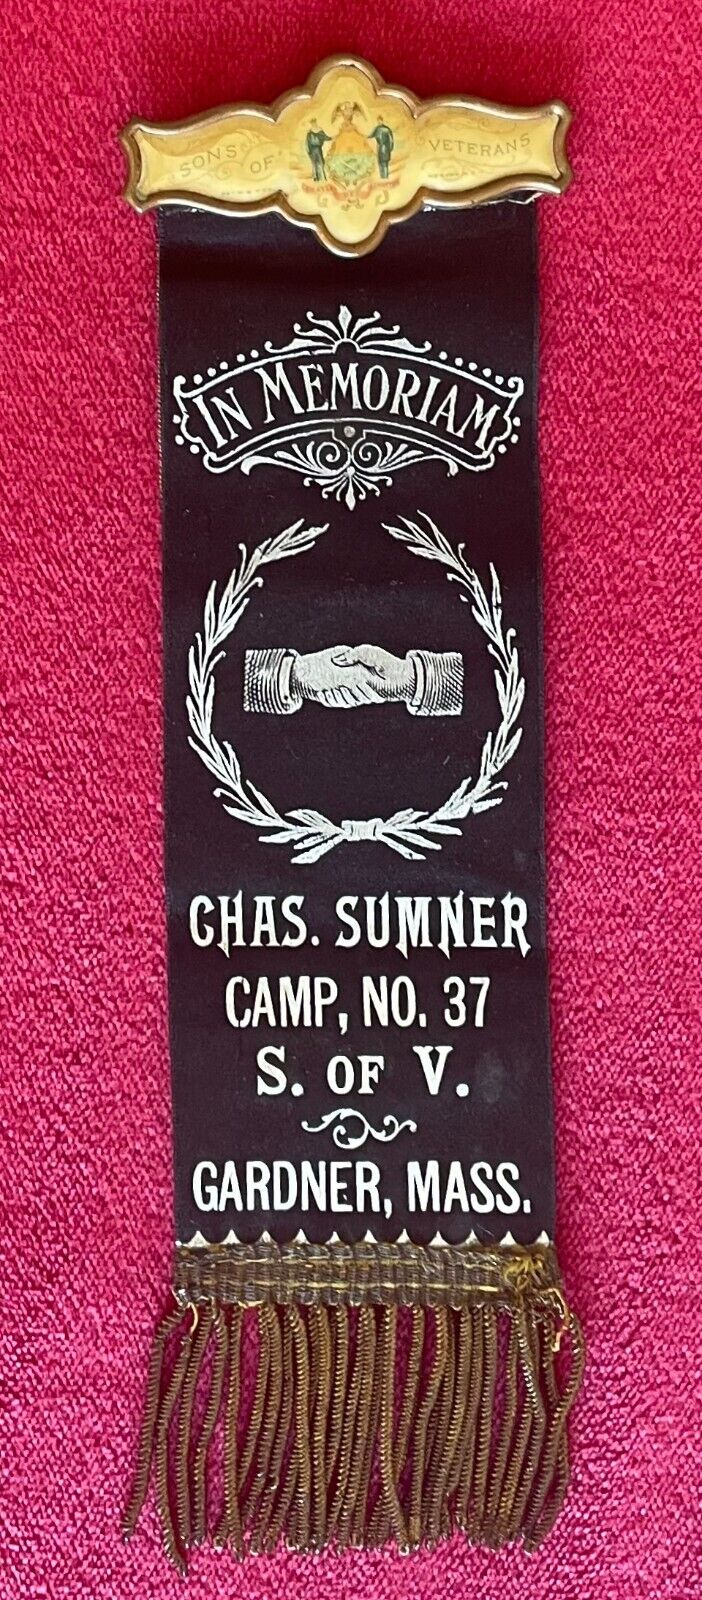 CHAS. SUMNER CAMP NO. 37 SONS OF VETERANS IN MEMORIAM RIBBON - GARDNER MASS.